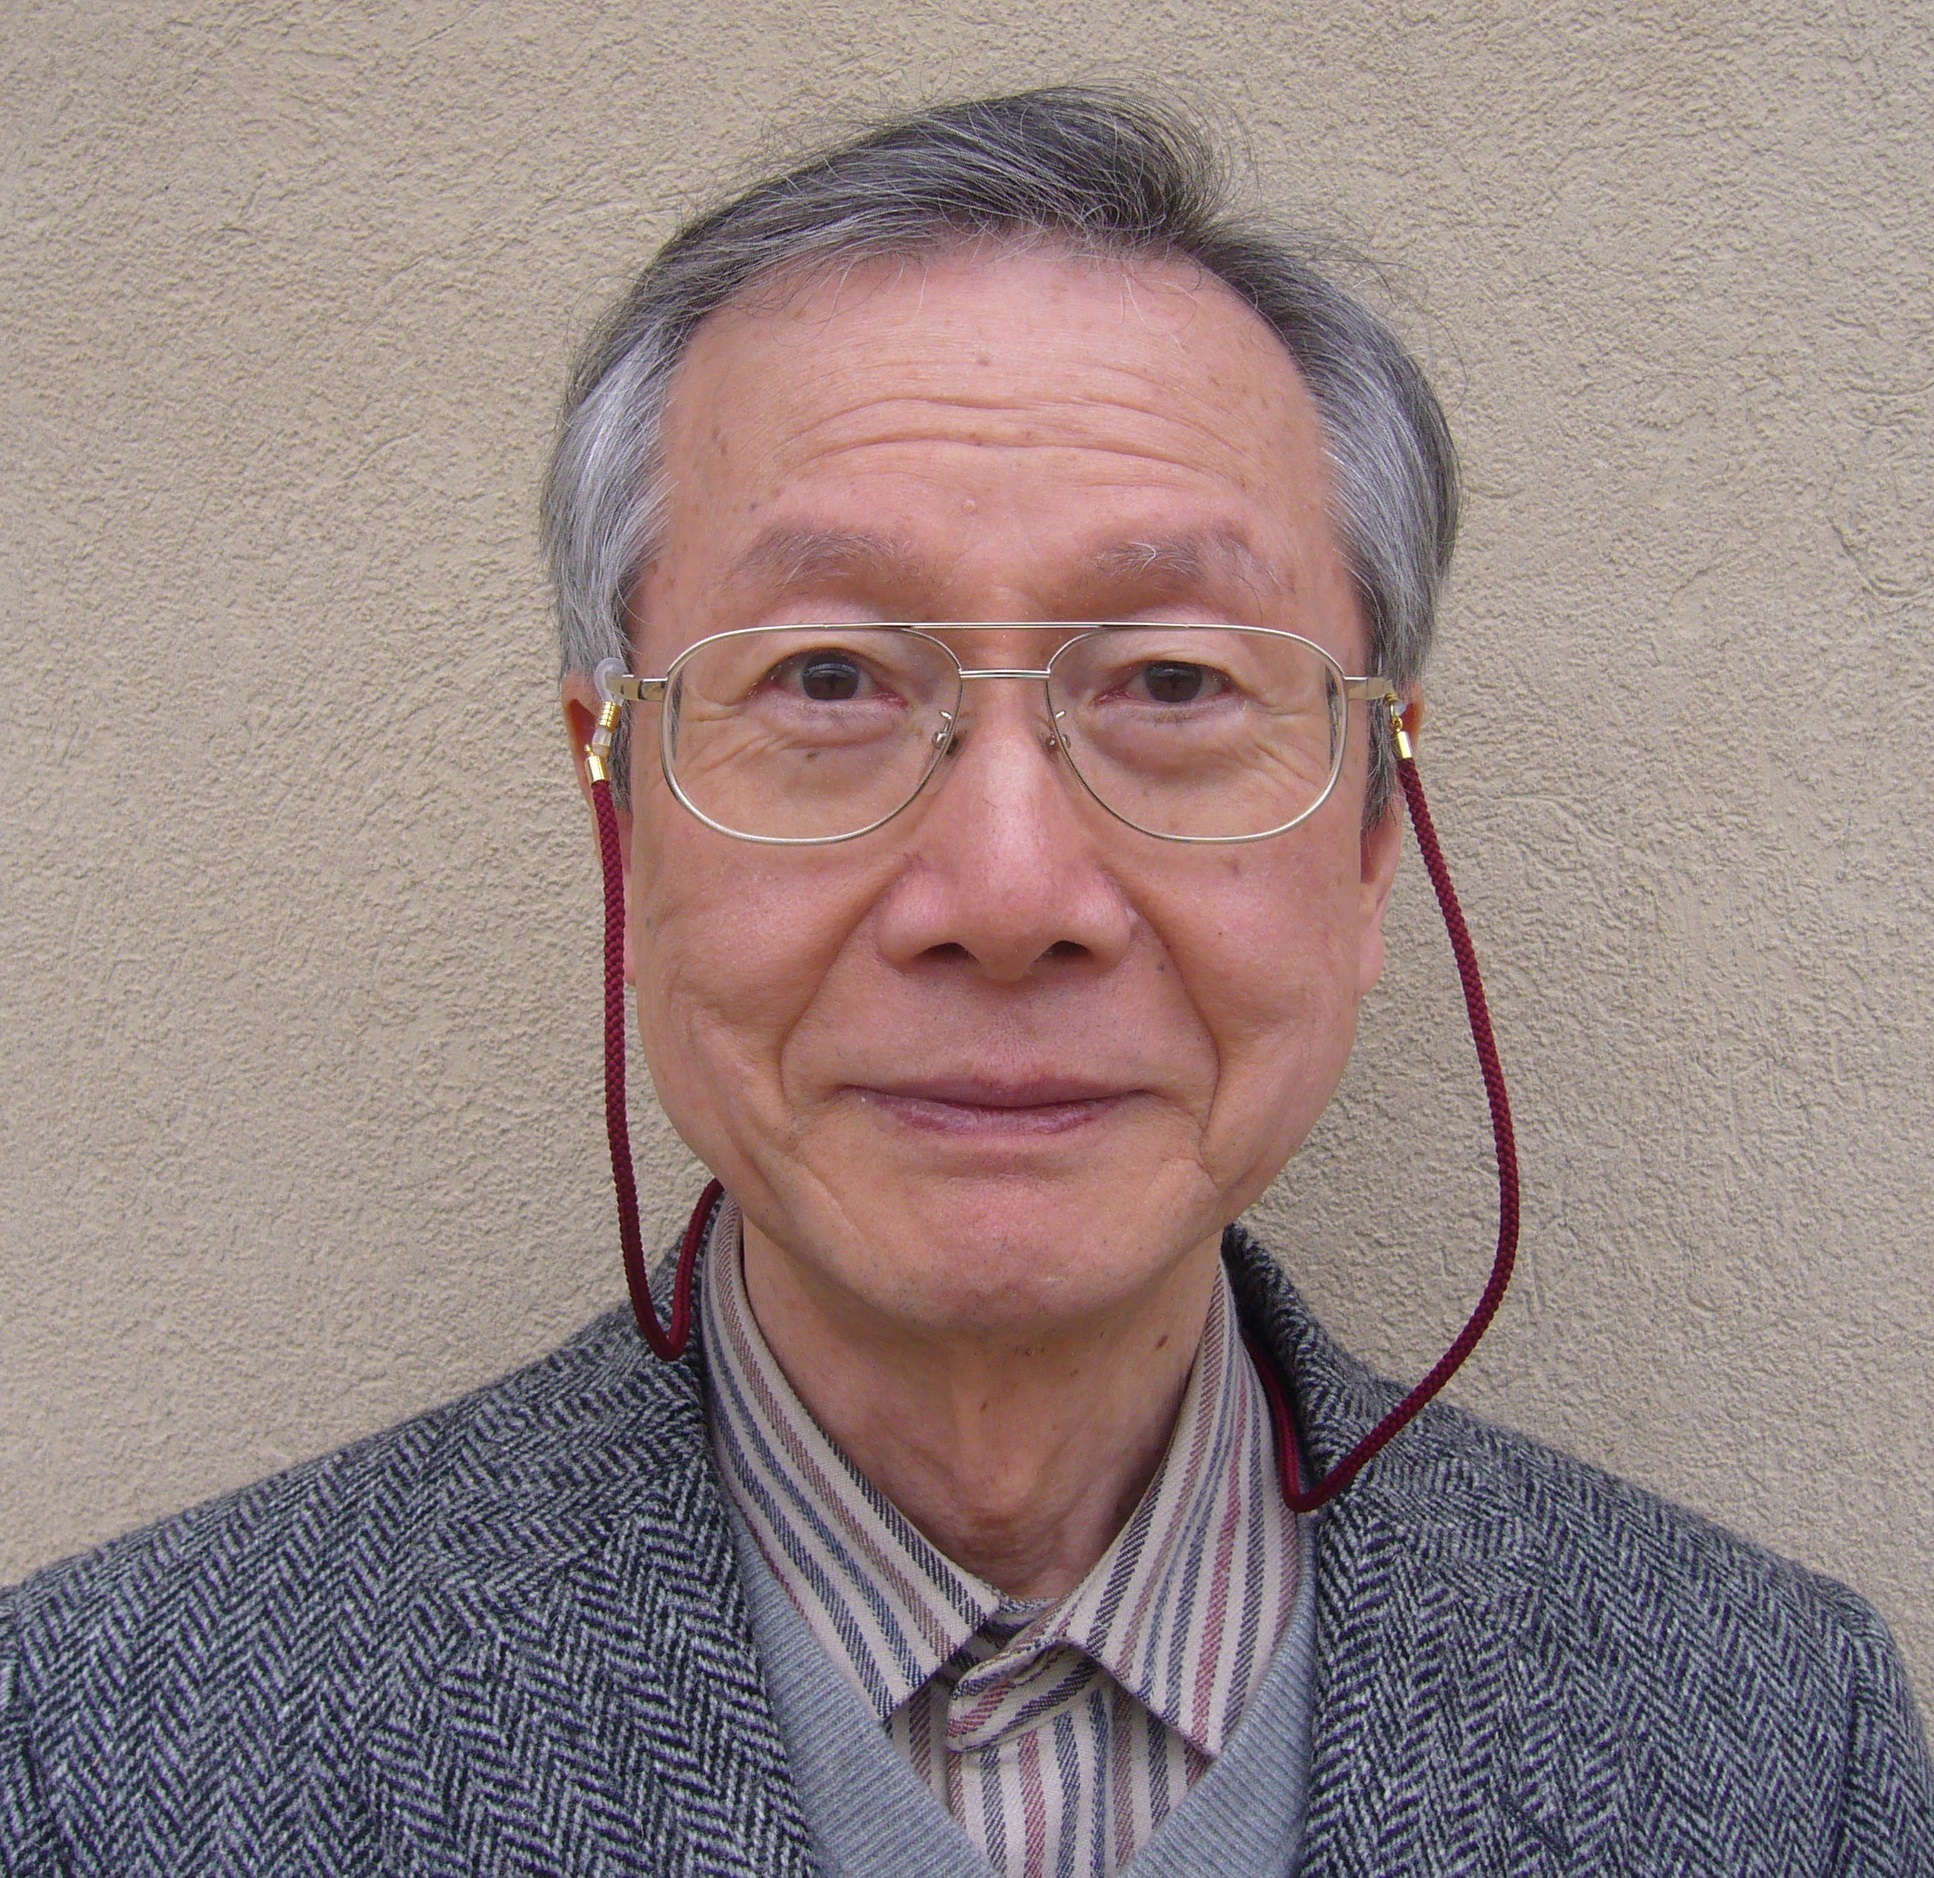 小嶋 稔東京大学名誉教授が、2021年の「Asian Scientist 100」に選出されました